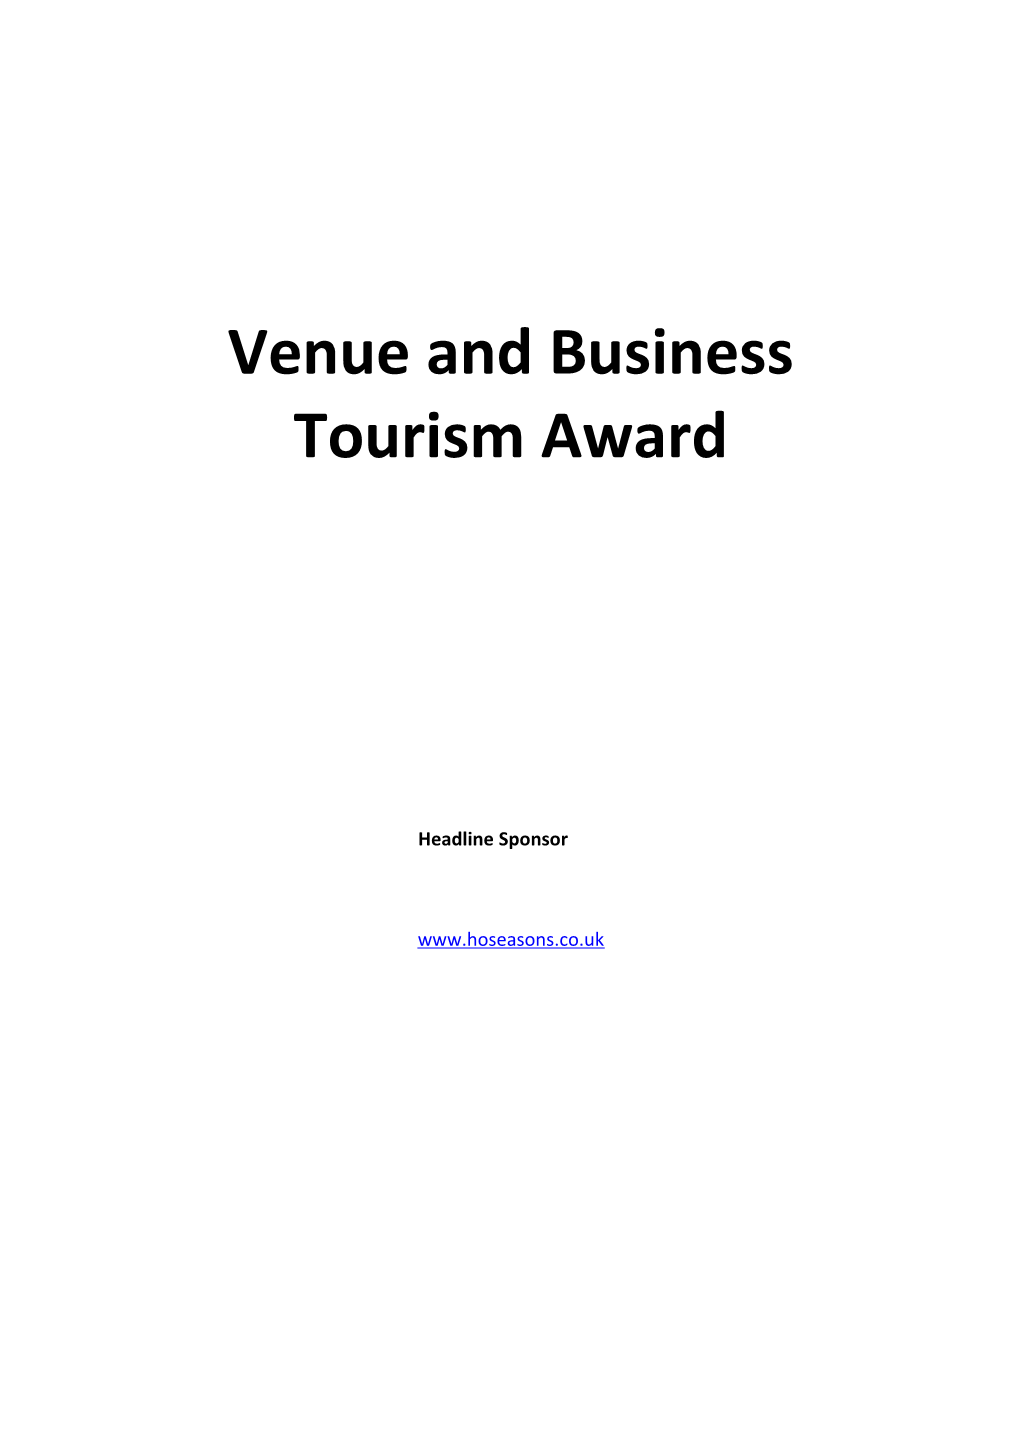 Venue and Business Tourism Award